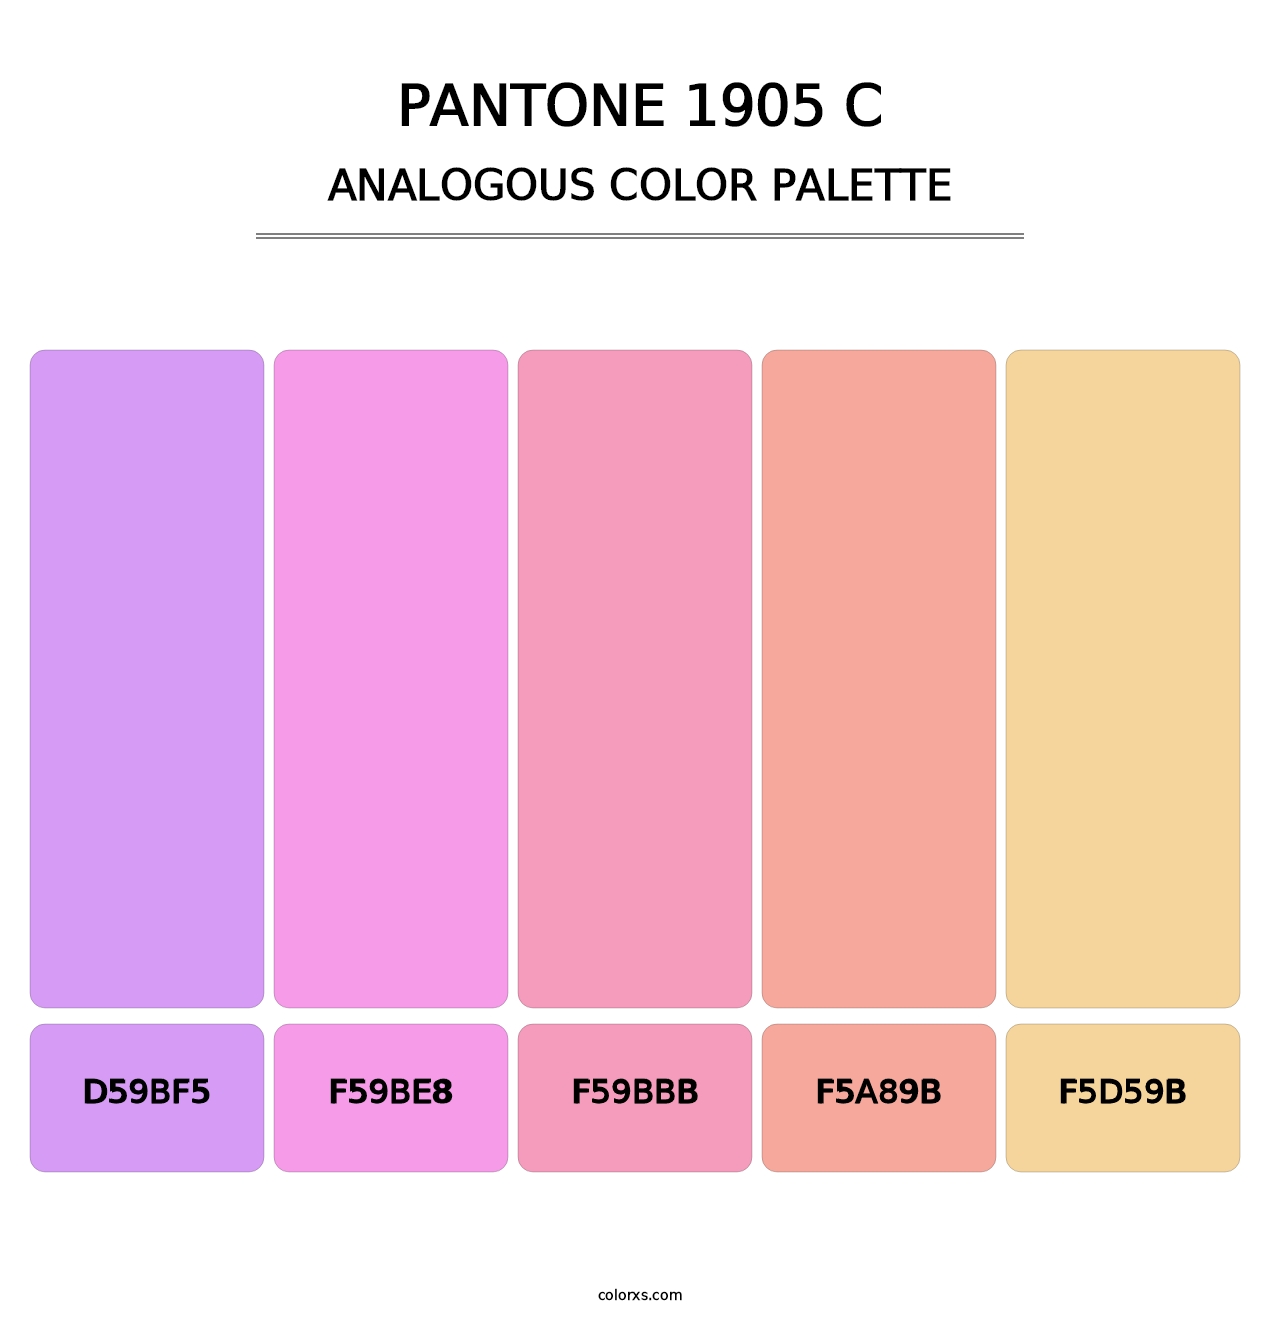 PANTONE 1905 C - Analogous Color Palette